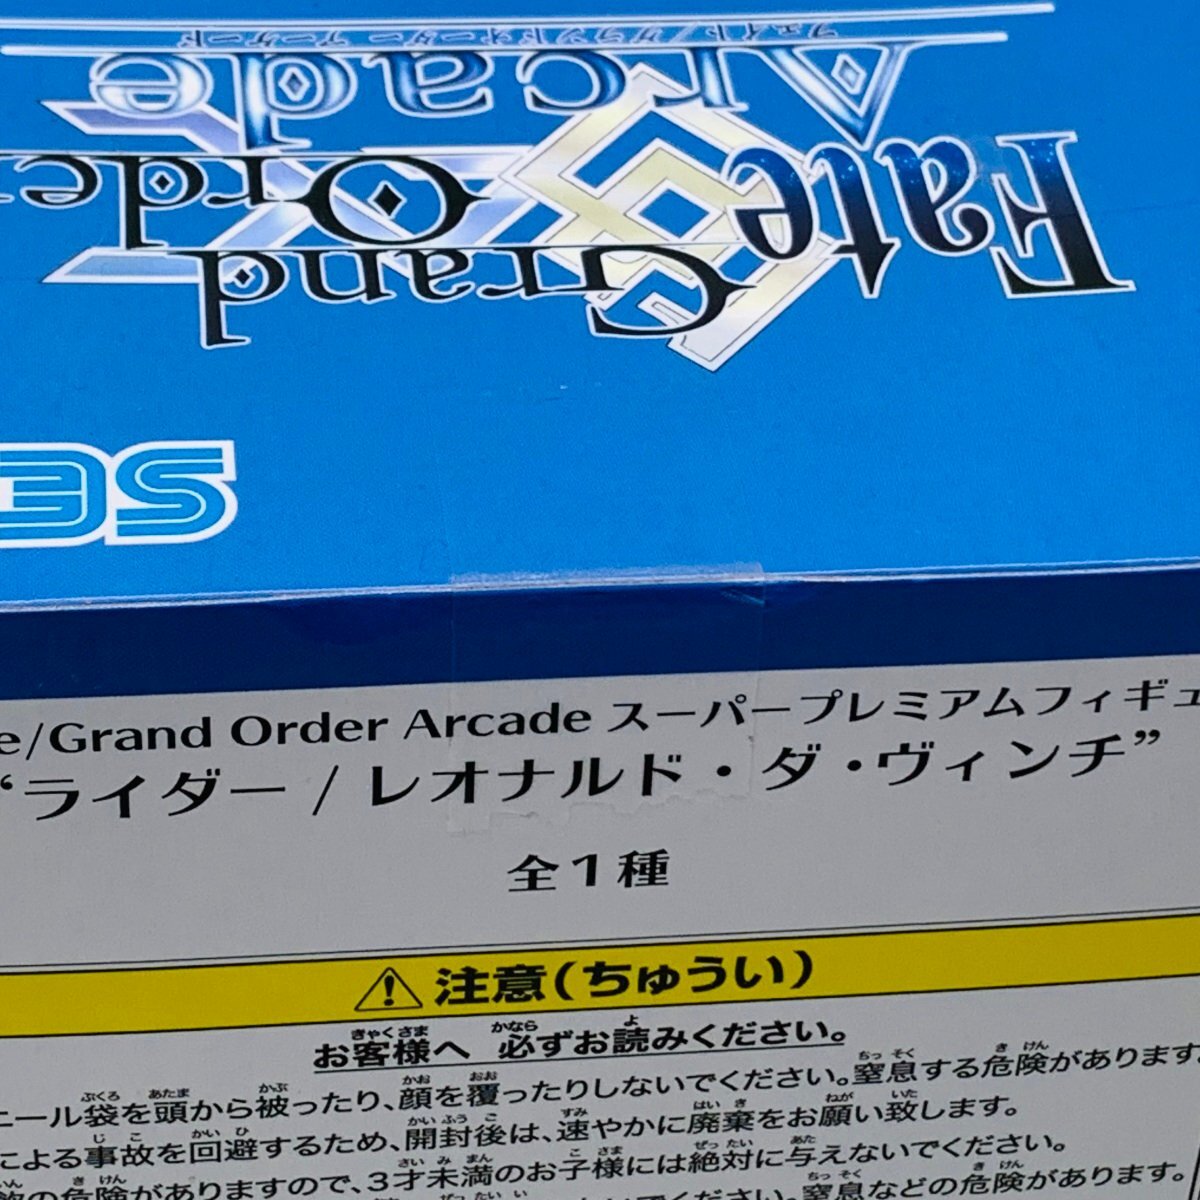 新品未開封 セガ SPM スーパープレミアムフィギュア Fate/Grand Order Arcade ライダー/レオナルド ダ ヴィンチの画像4